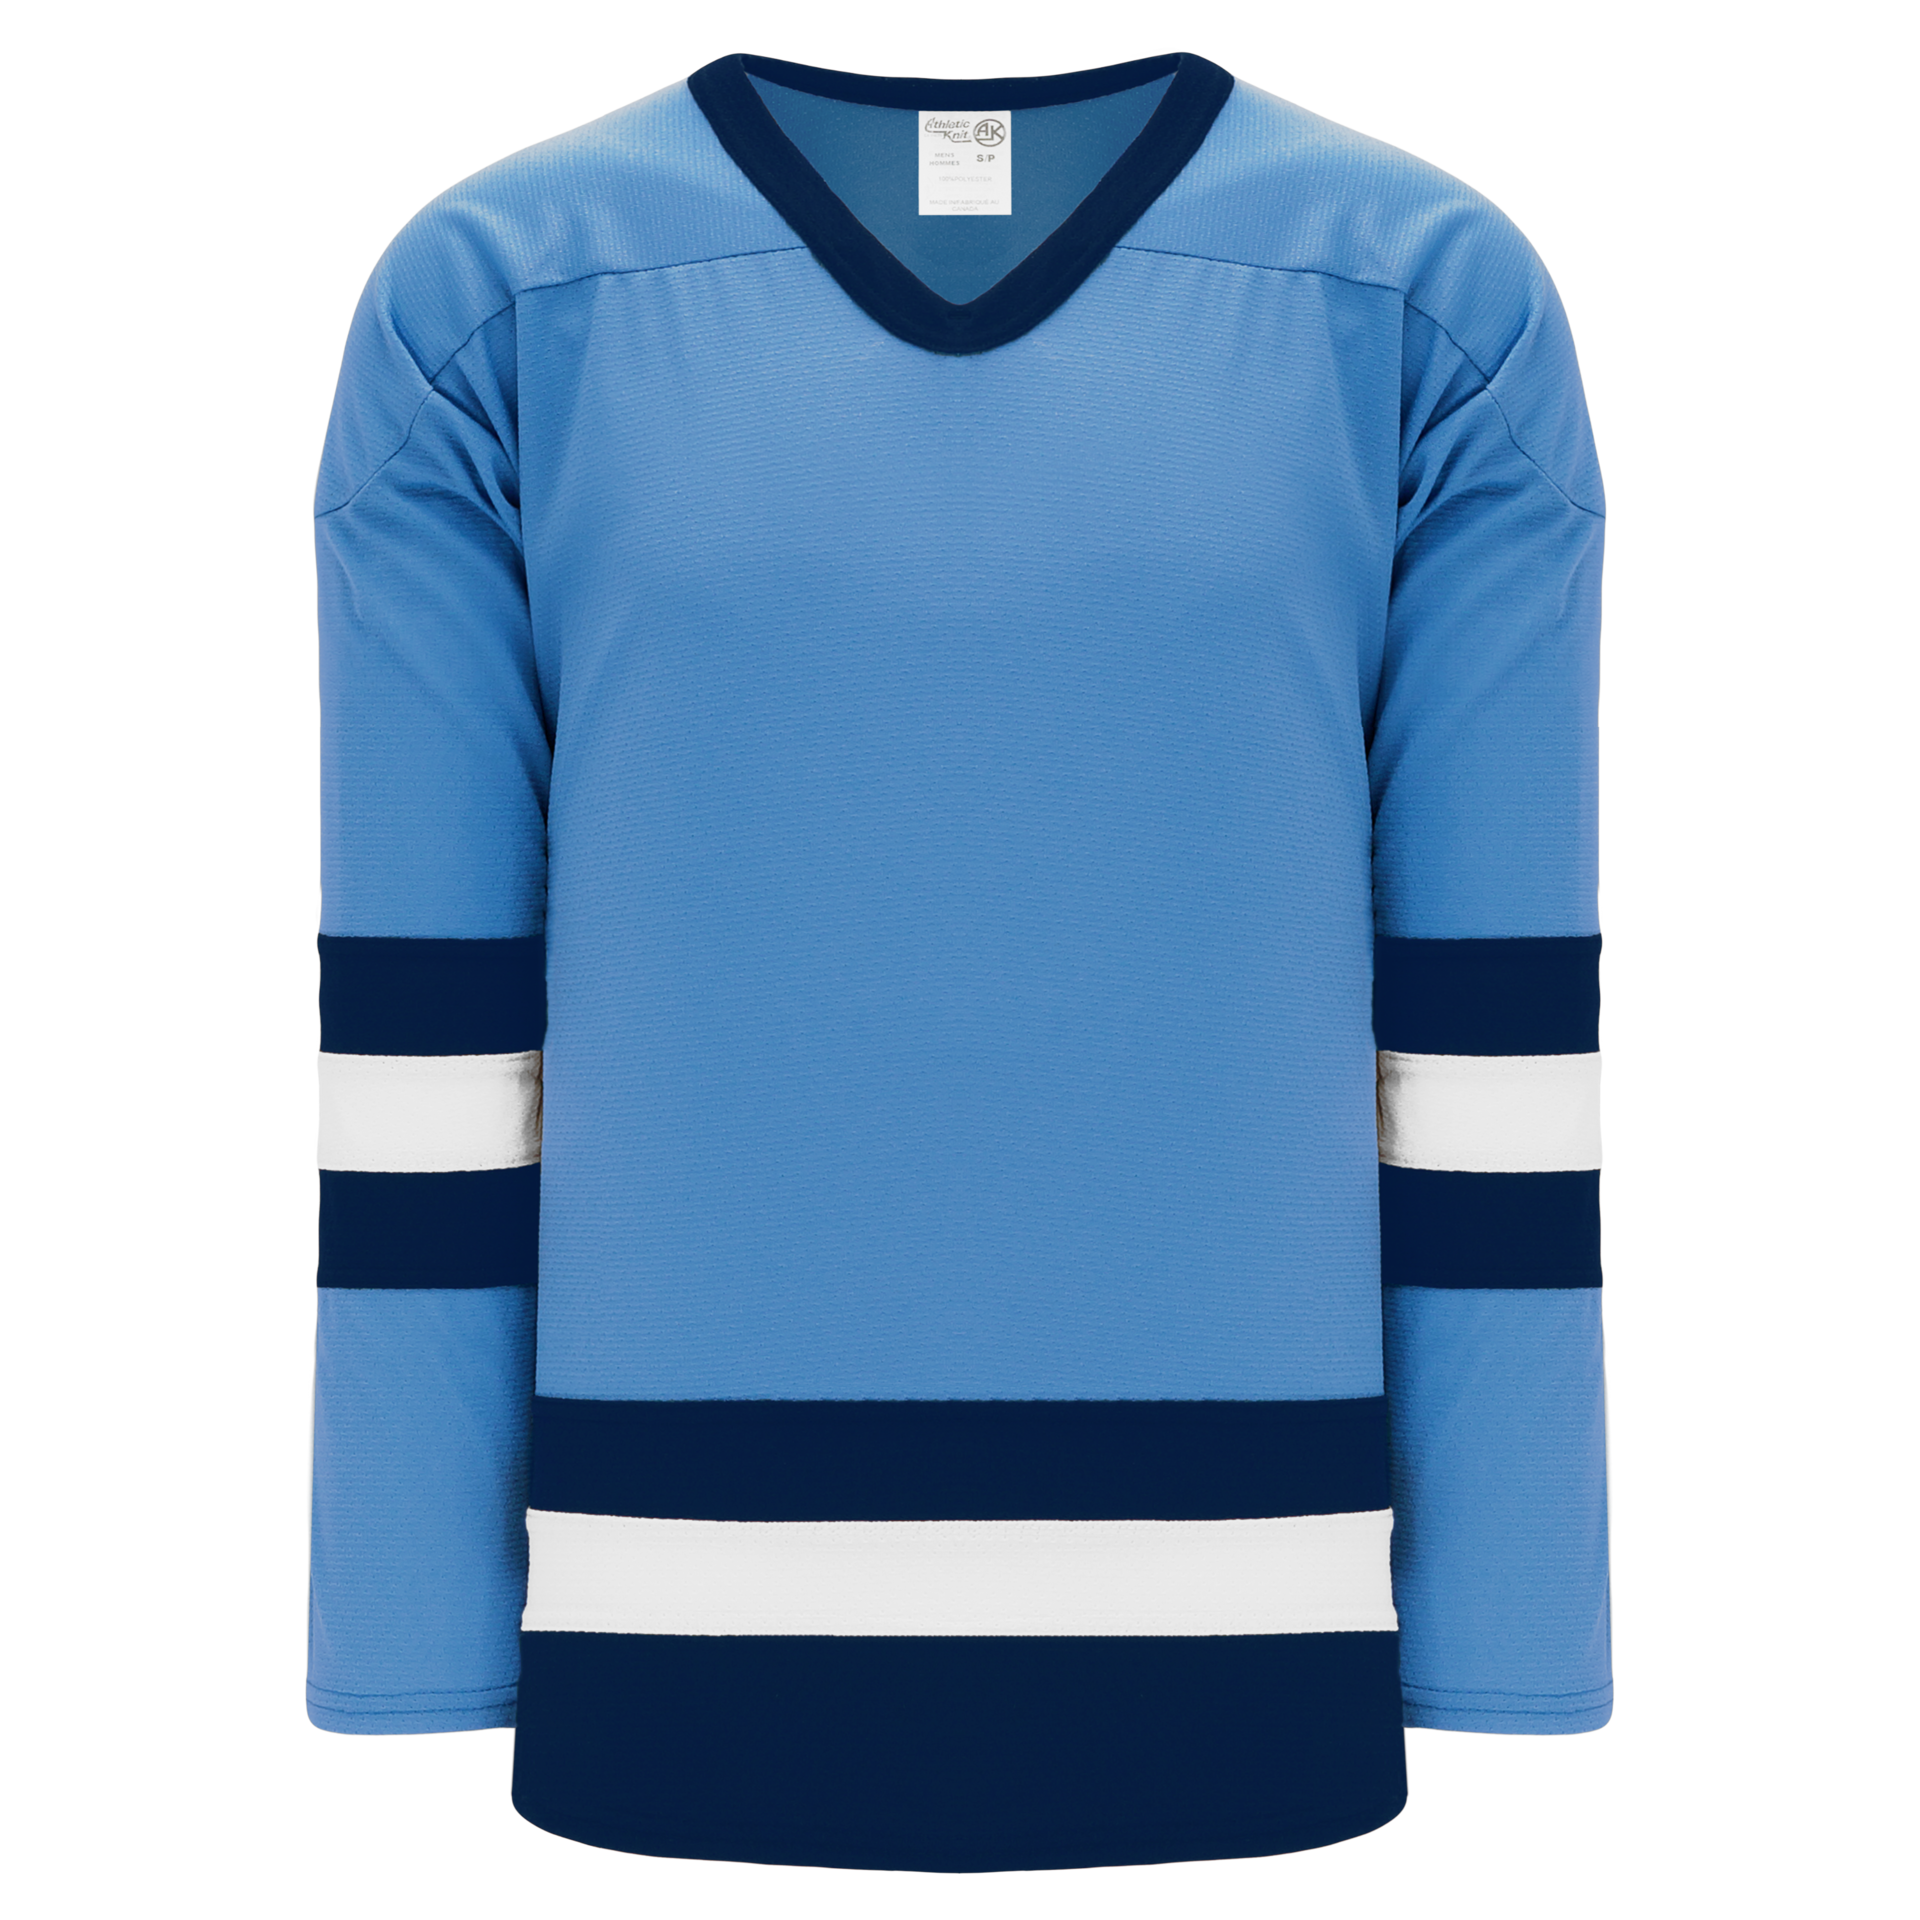 Hockey Jerseys by Athletic Knit - offers blank NHL hockey jerseys